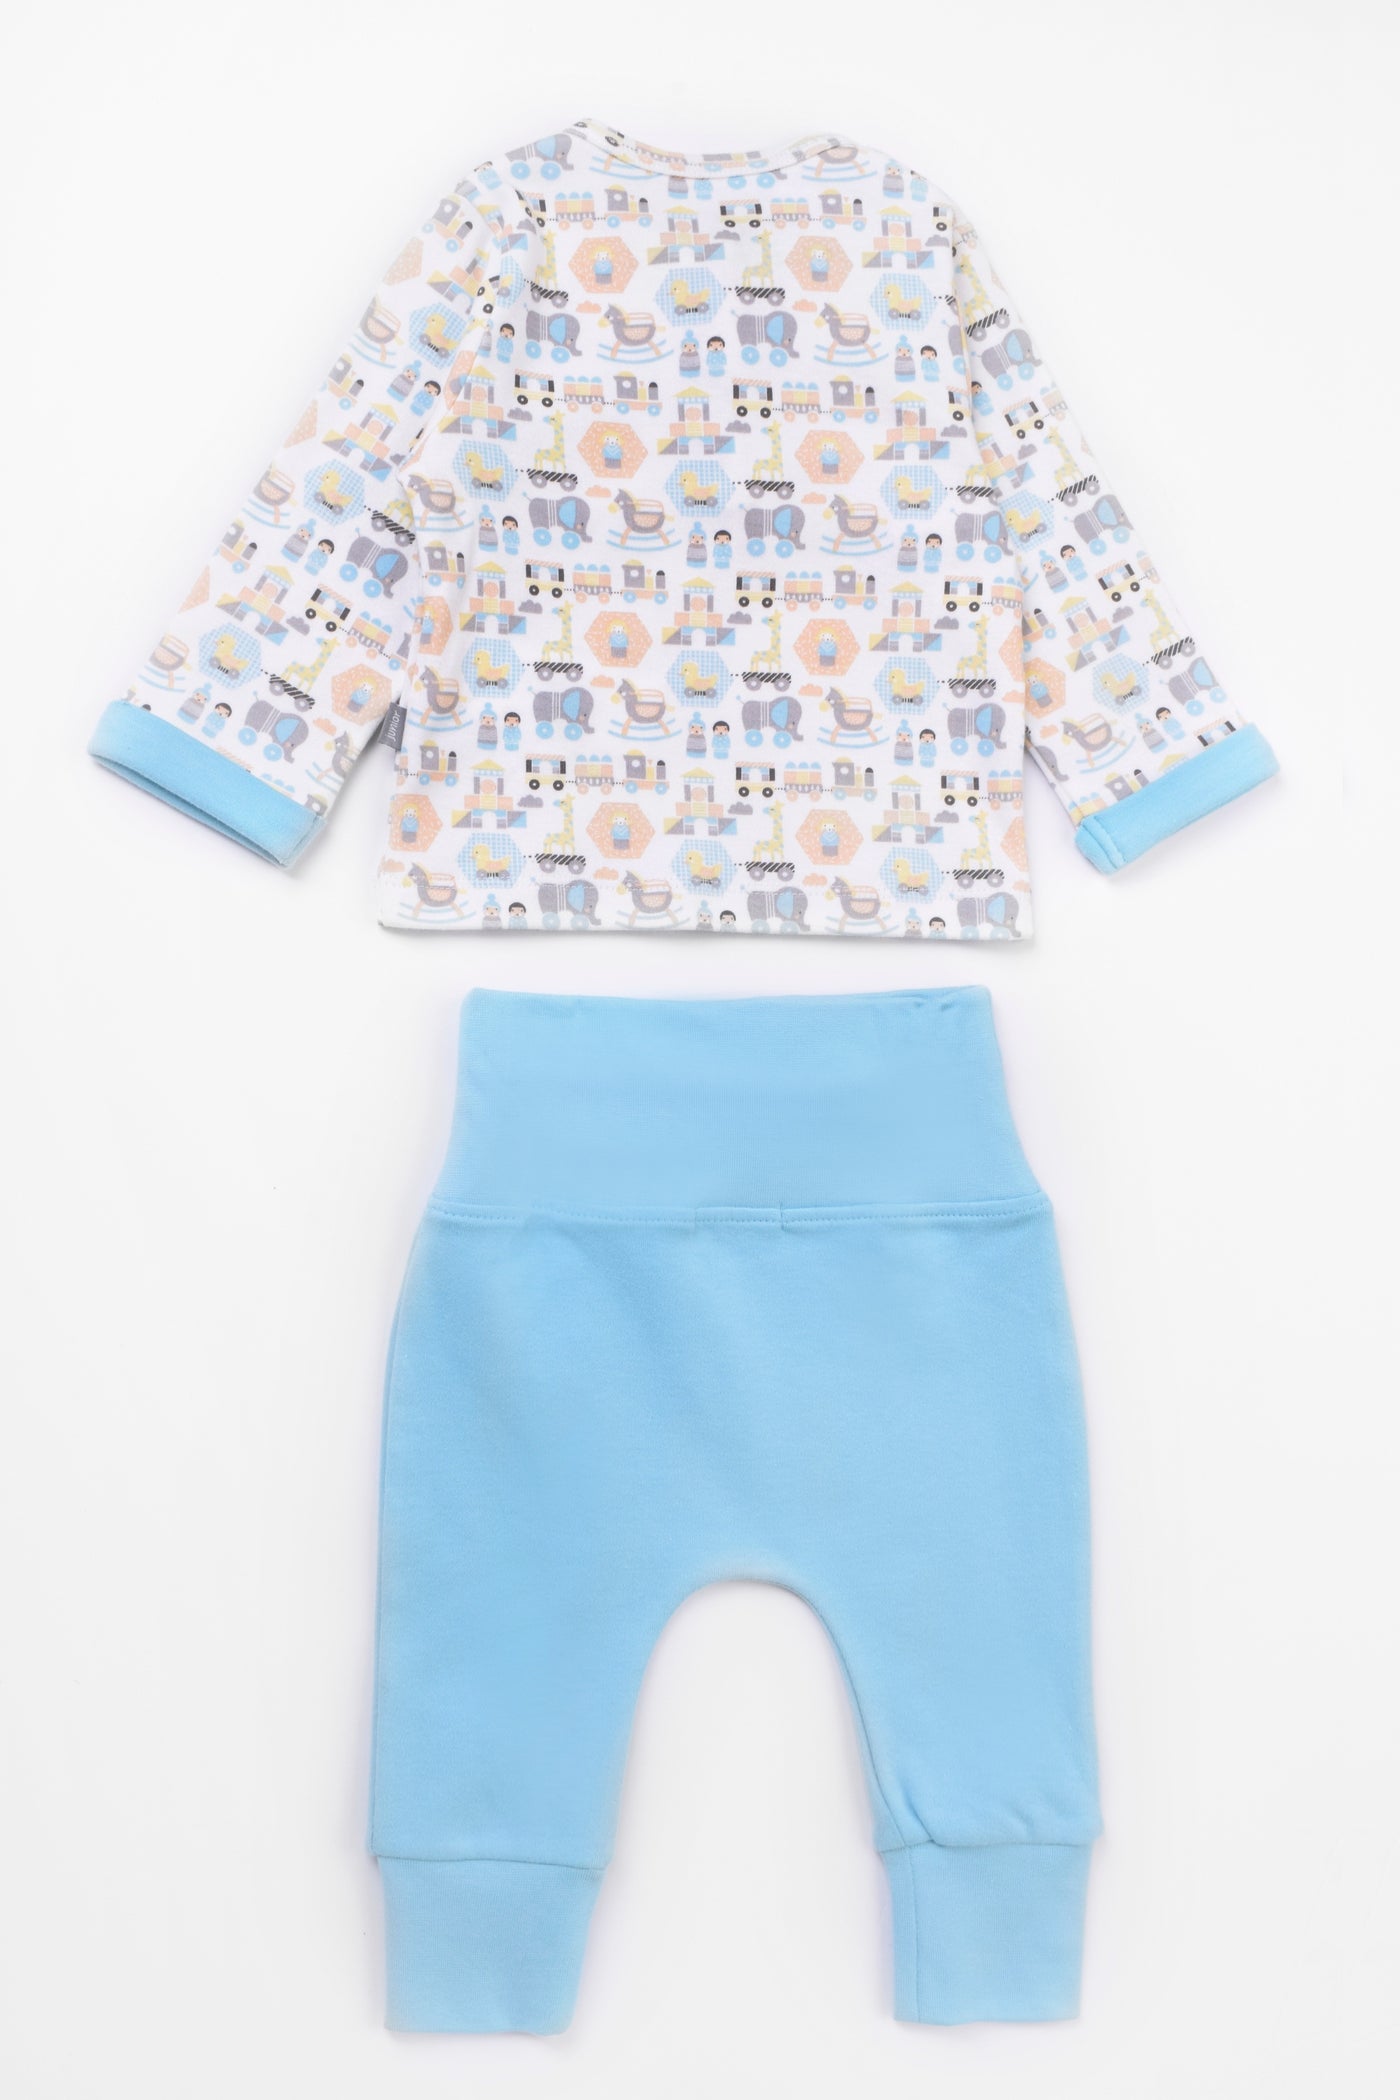 Round Printed pajamas Set